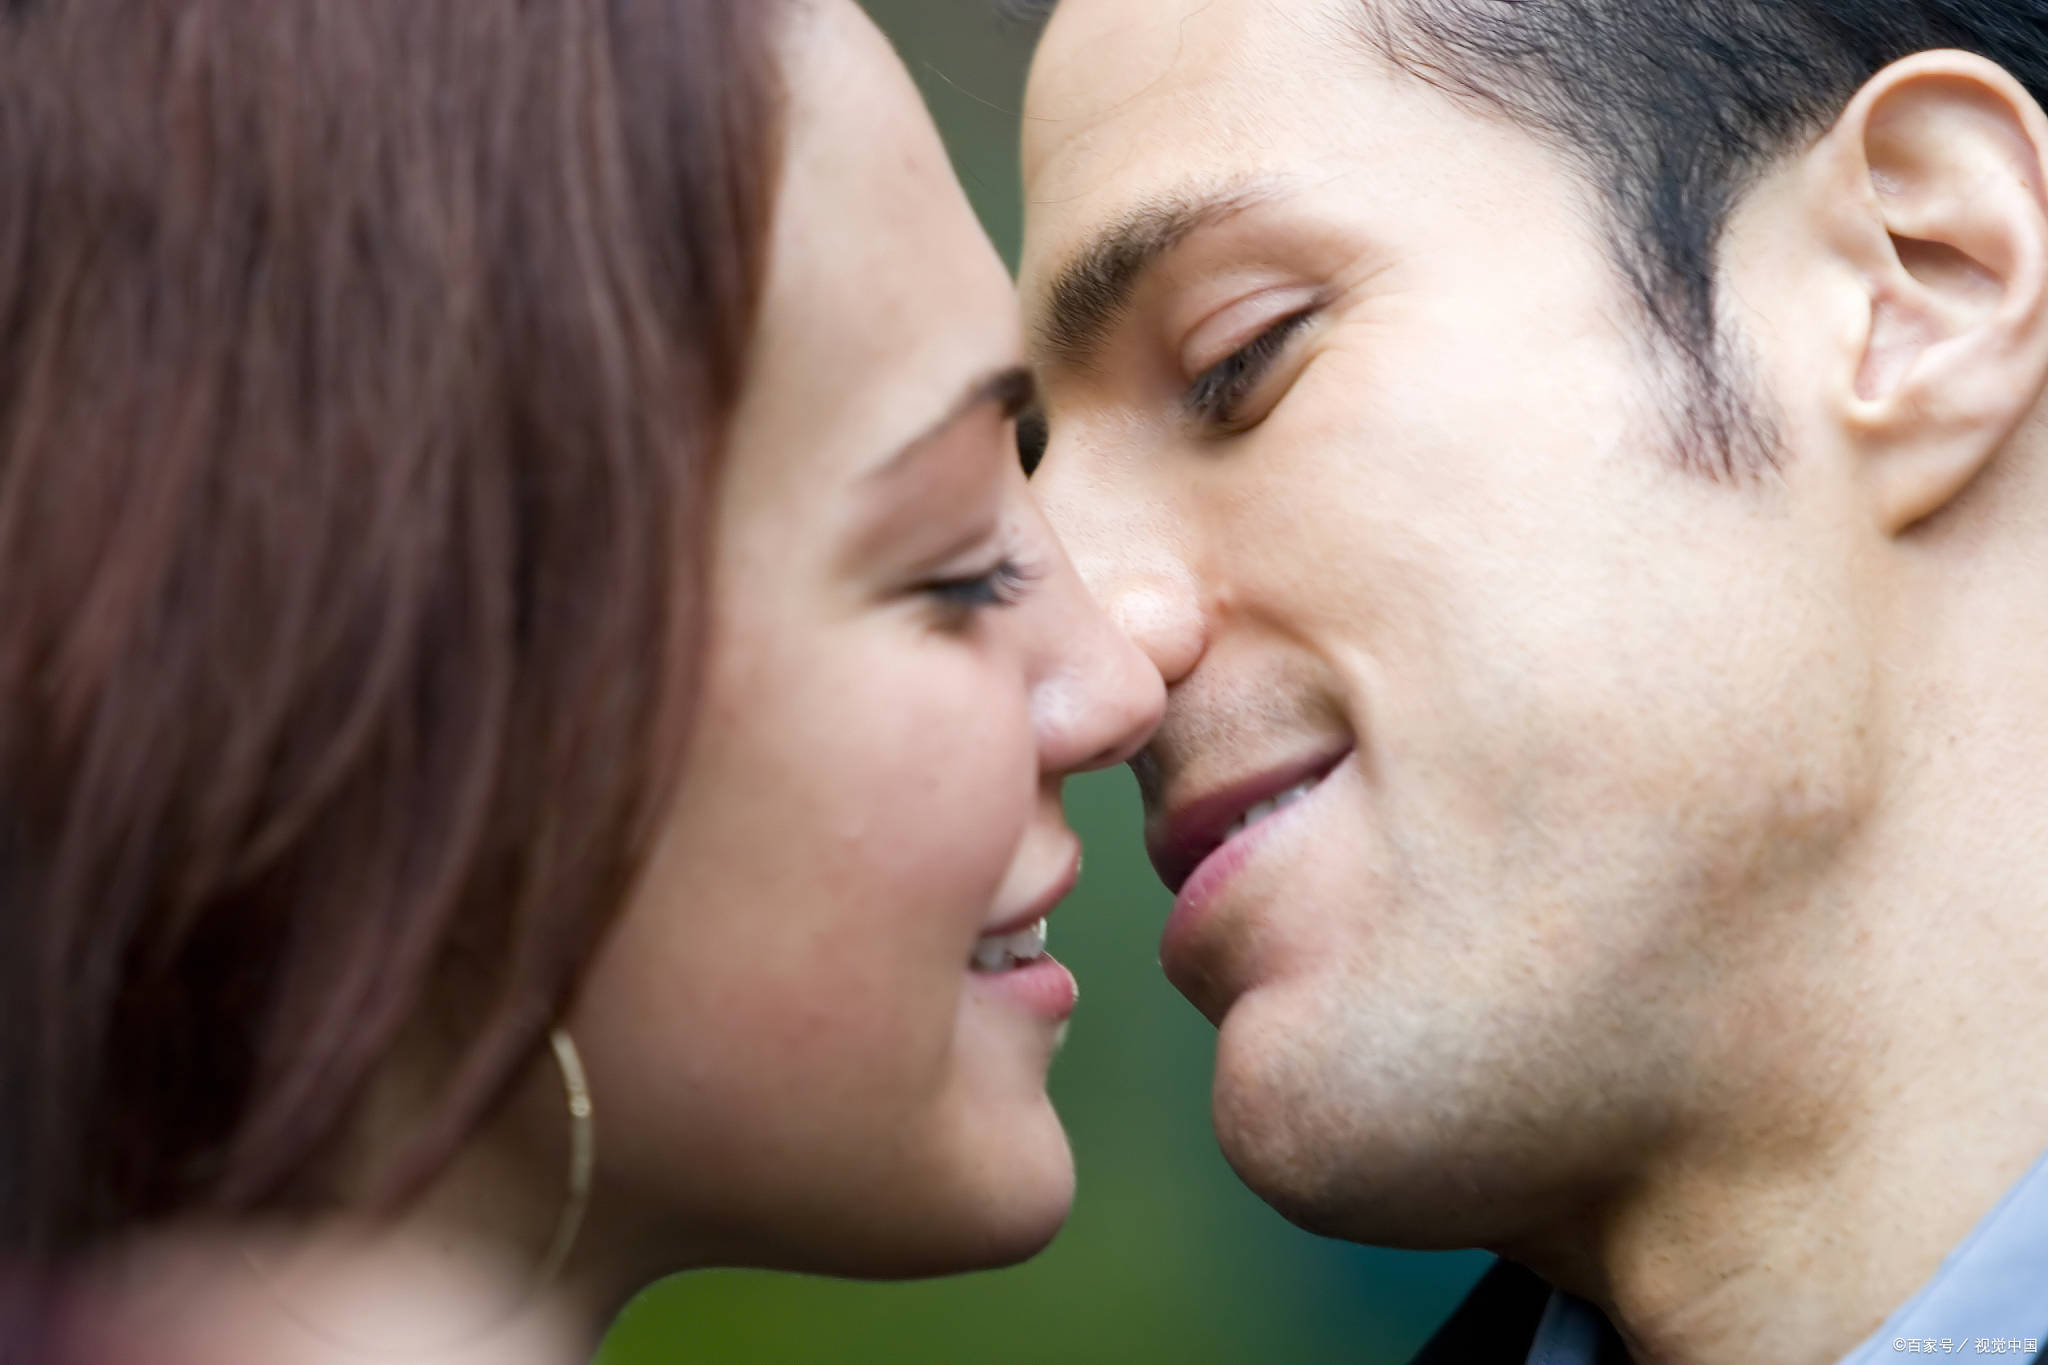 男女接吻时,为什么不觉得对方的口水恶心?